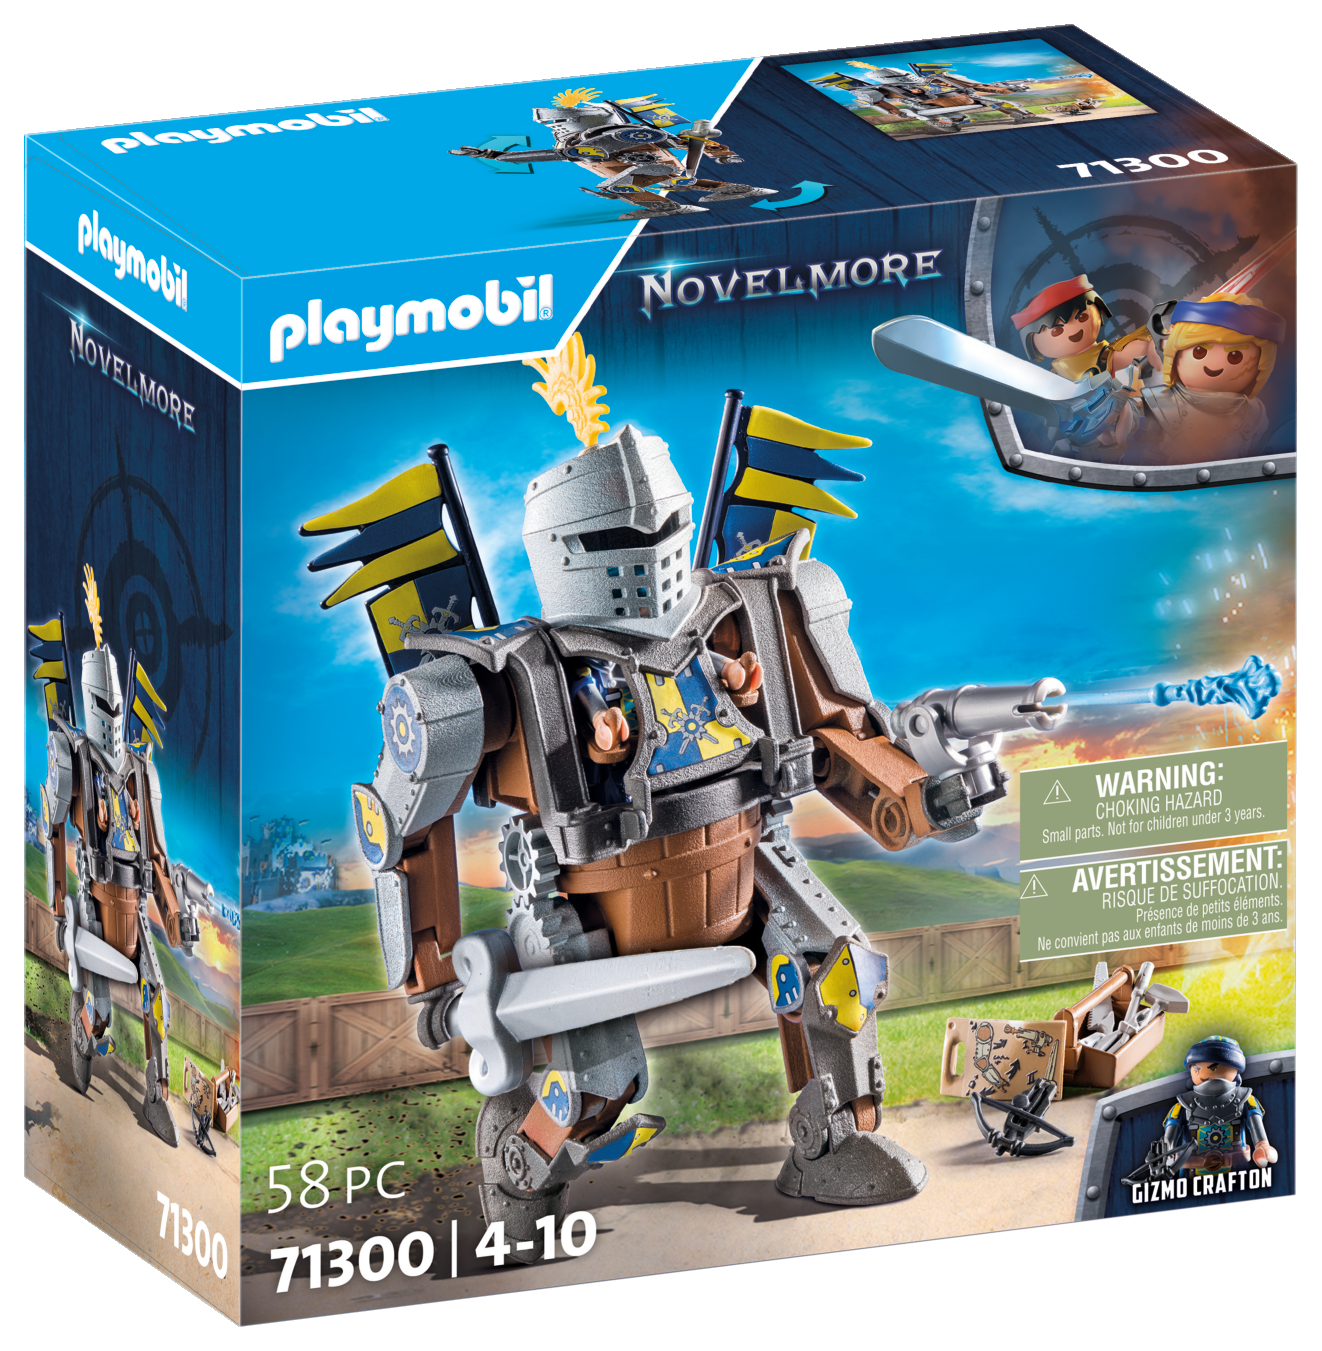 Playmobil 71300 novelmore - robot da combattimento per bambini da 4 anni in su - Playmobil